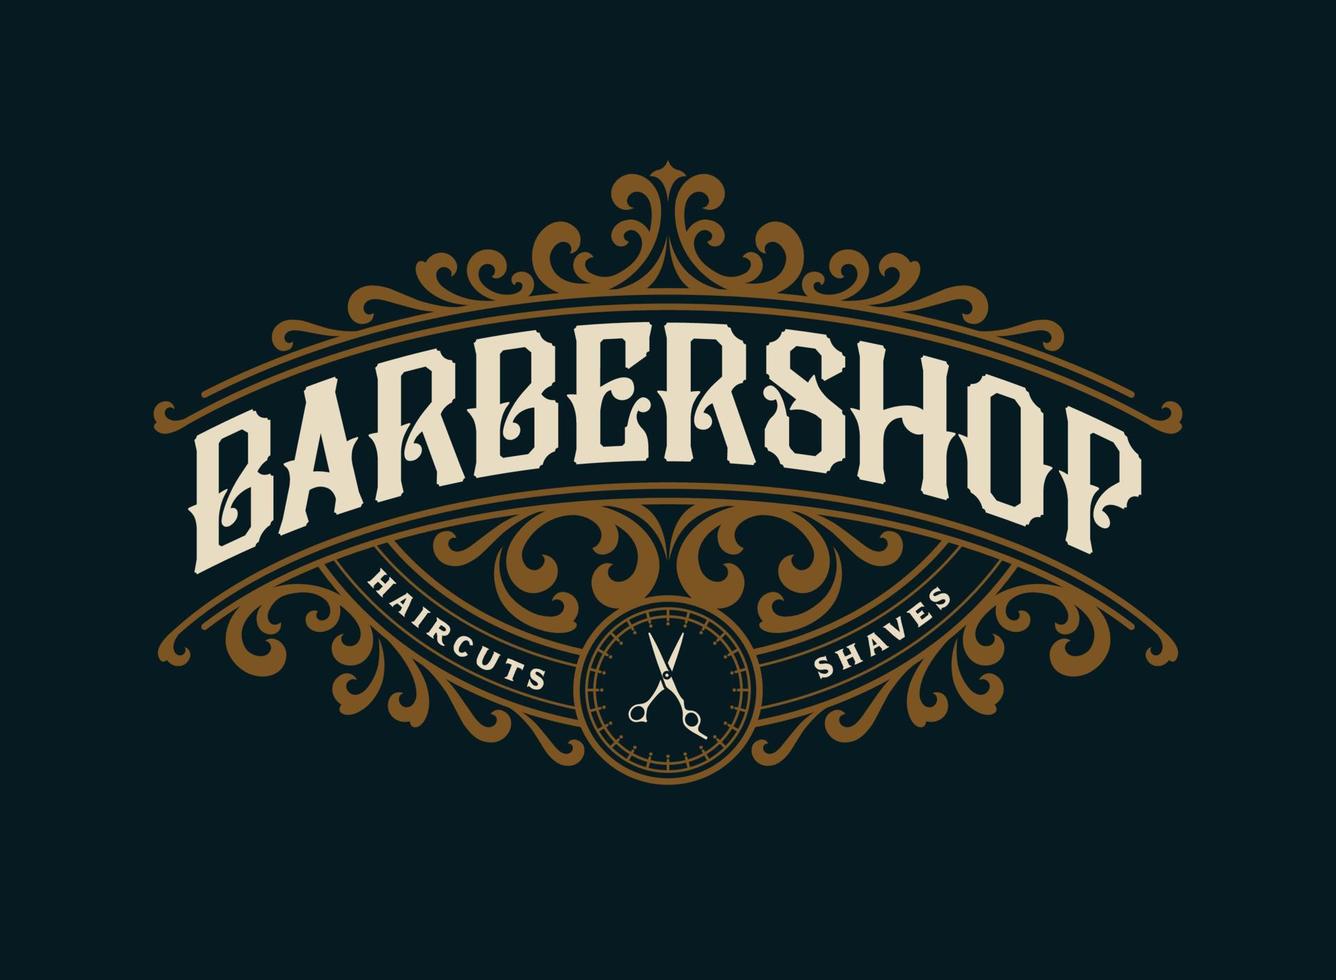 Barbershop vintage lyx ram logotyp märke med blomstrande viktoriansk prydnad vektor